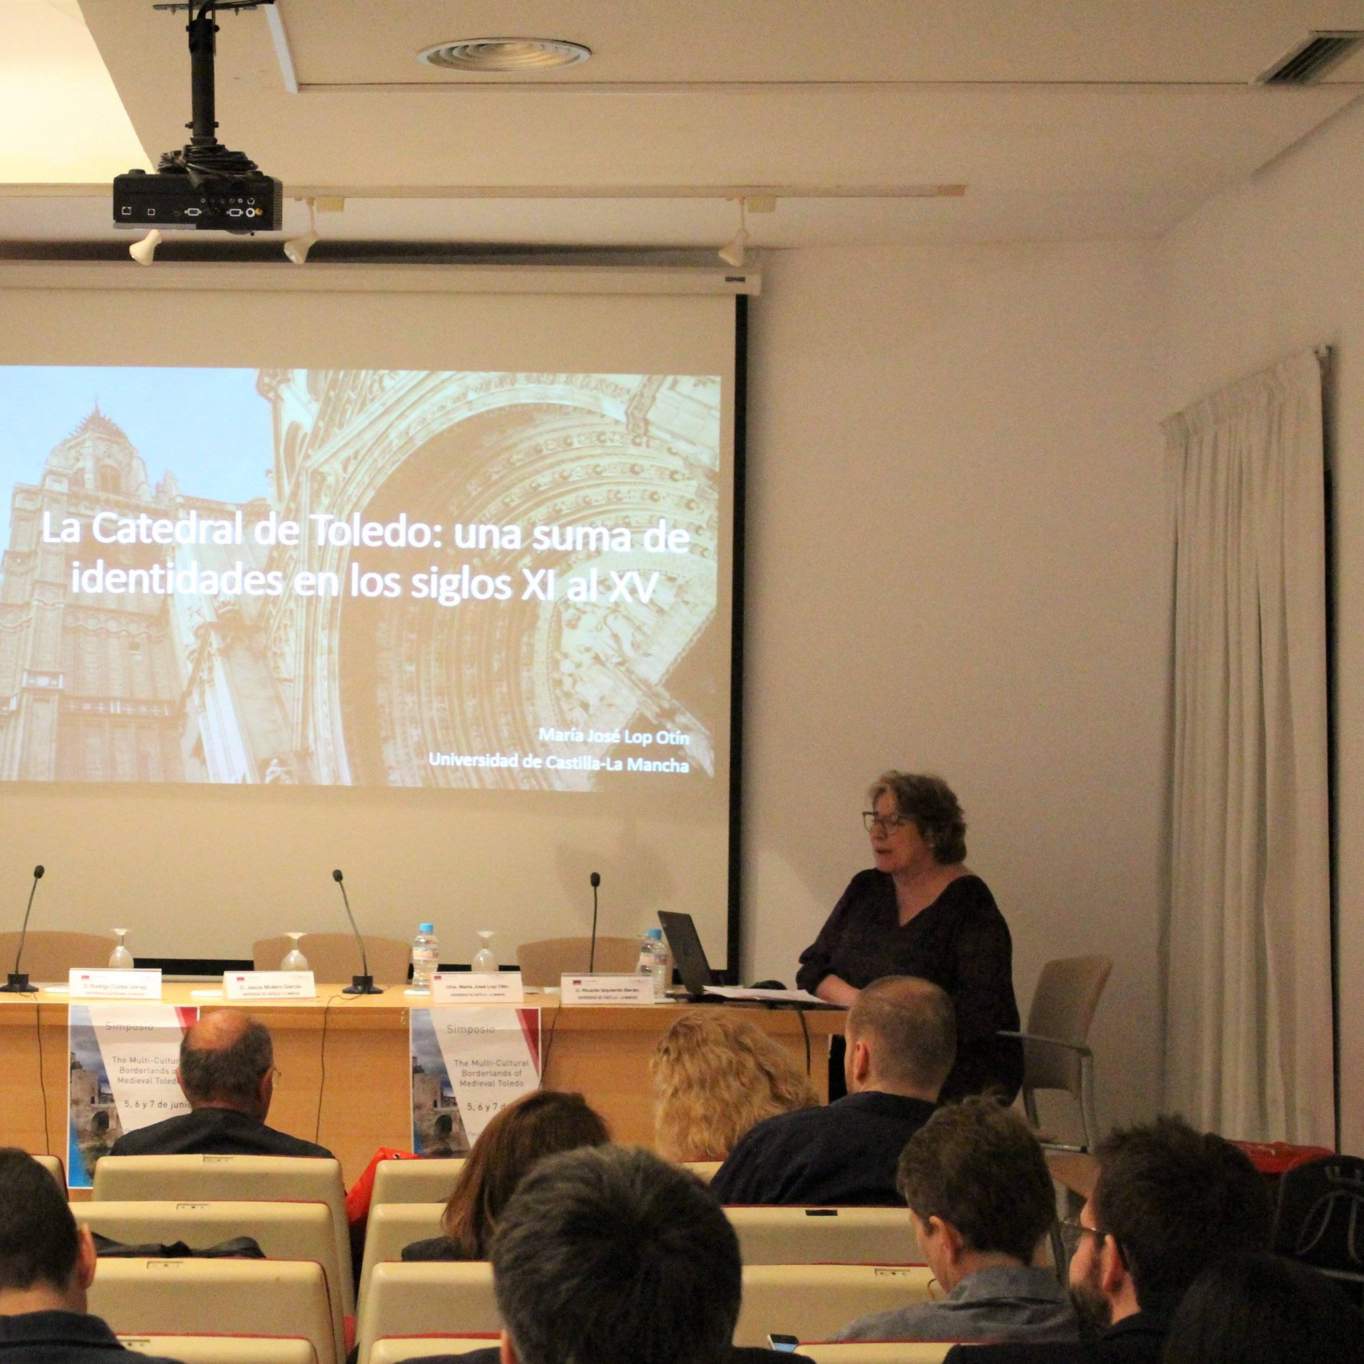 Photo of presentation by María José Lop Otín